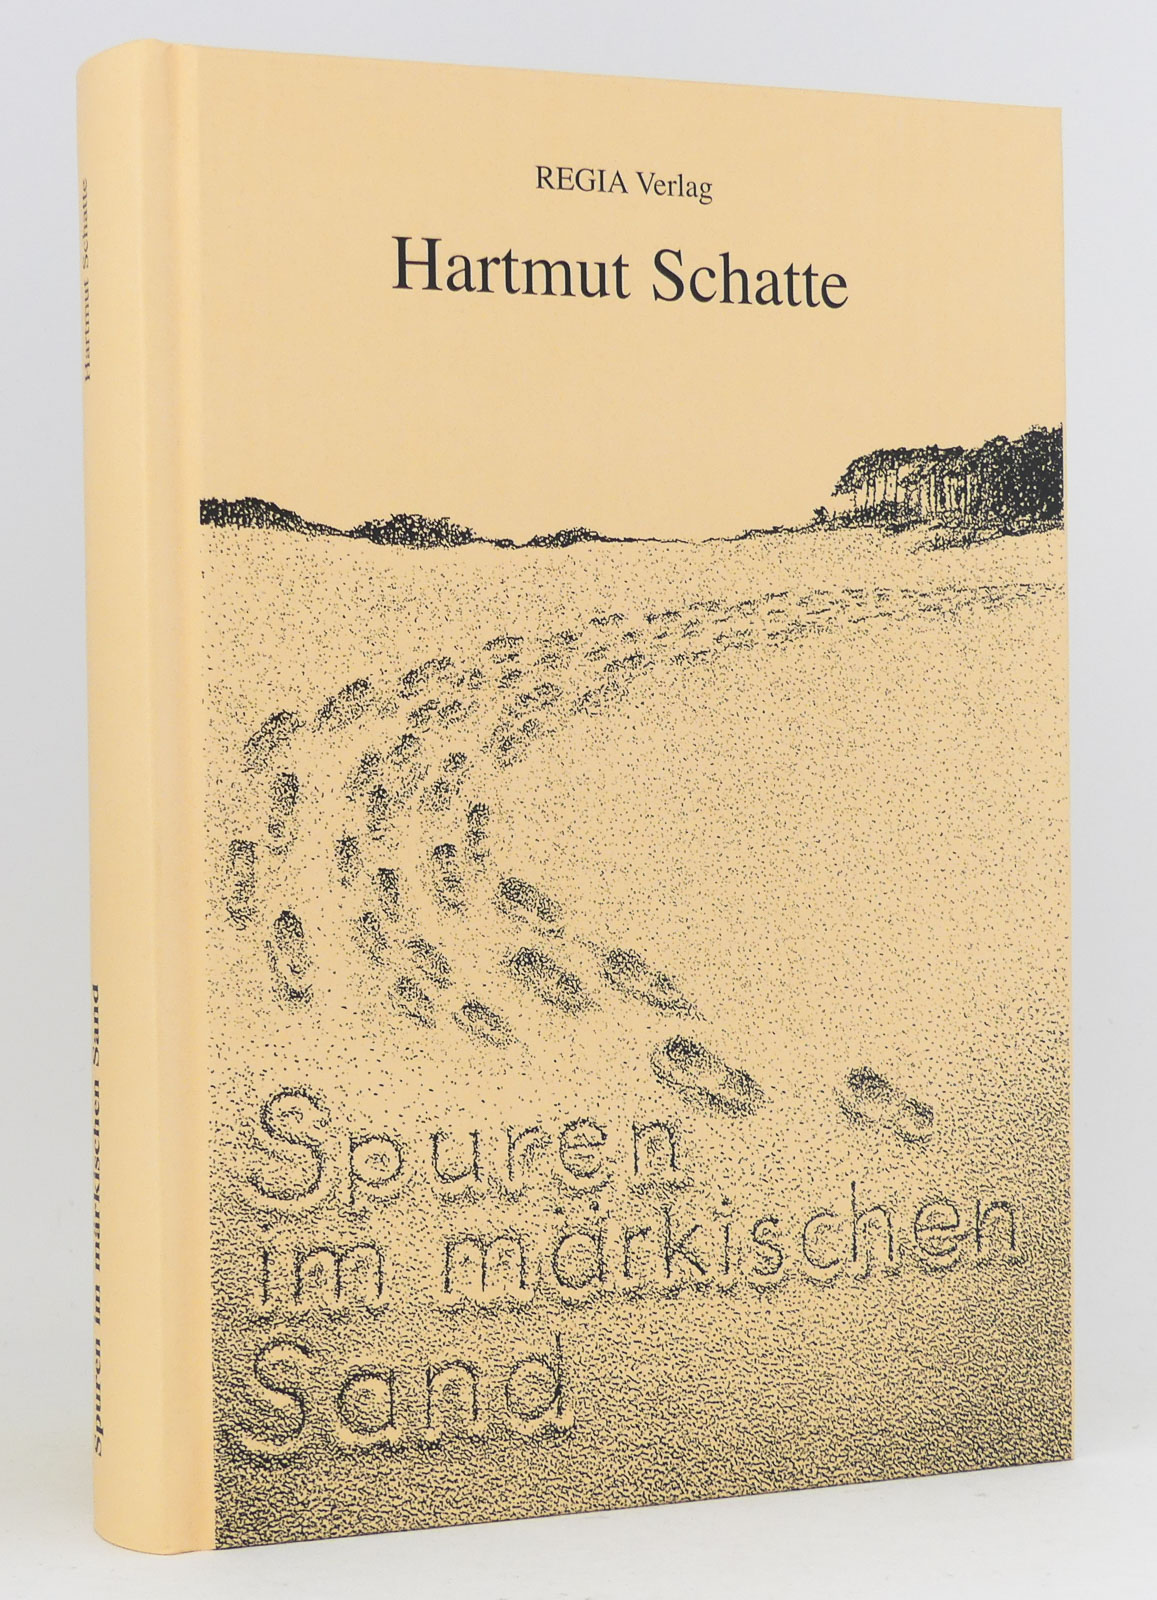 Spuren im märkischen Sand (SIGNIERT) - Schatte, Hartmut